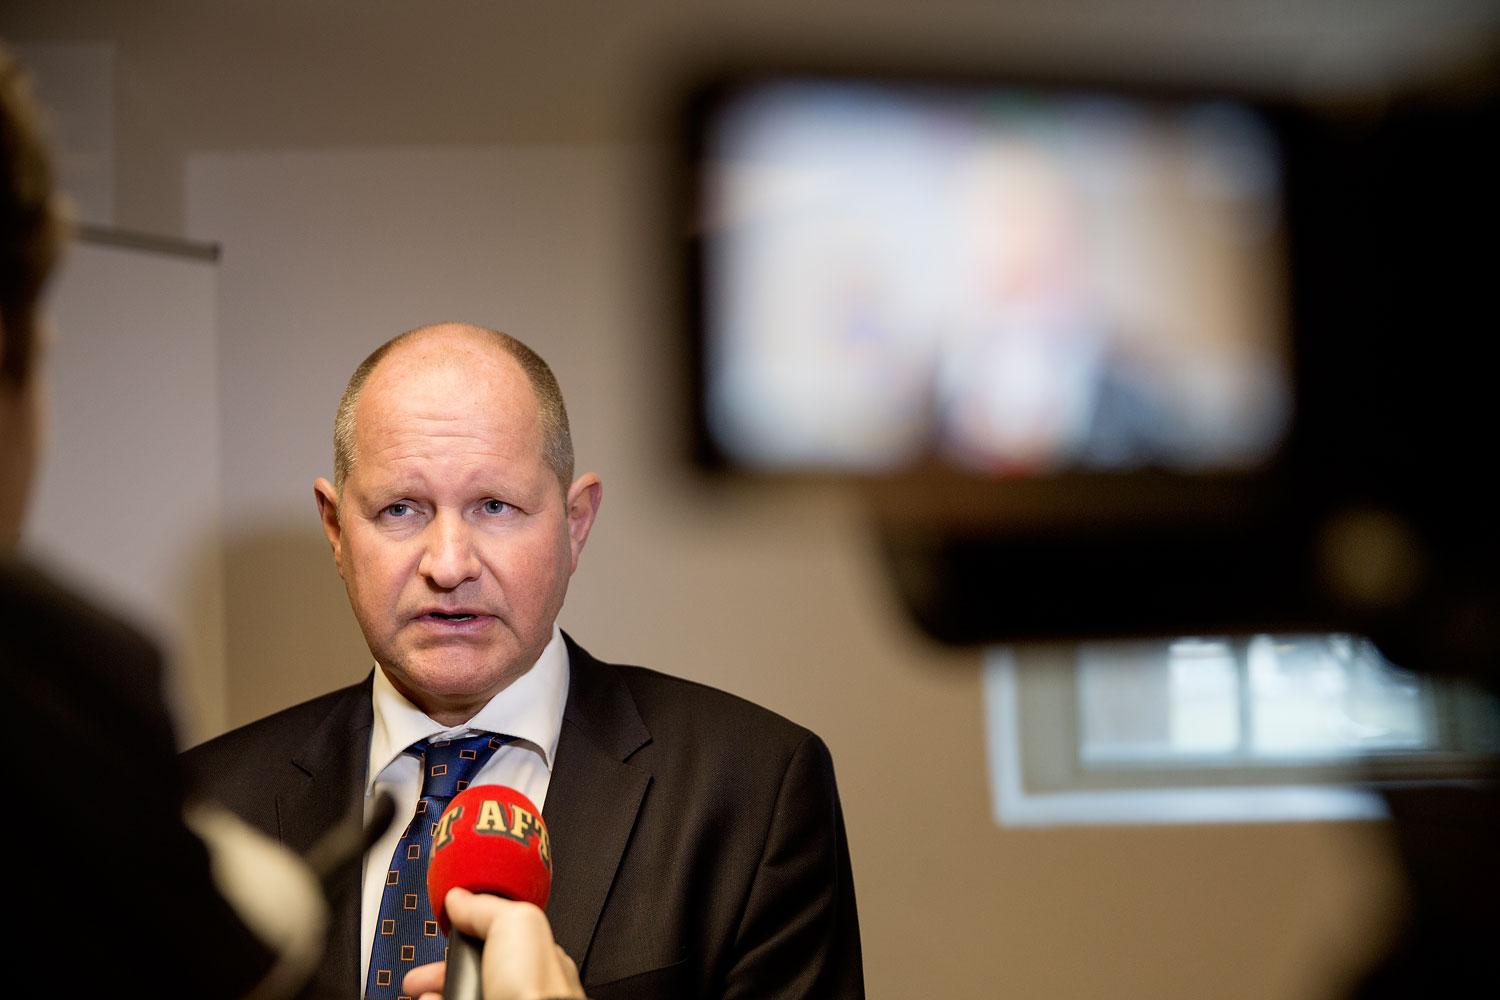 Gång på gång har rikspolischef Dan Eliasson allvarligt skadat förtroendet för den myndighet där han för tillfället verkat, skriver SD:s partiledare Jimmie Åkesson. Nu kräver han Eliassons avgång.